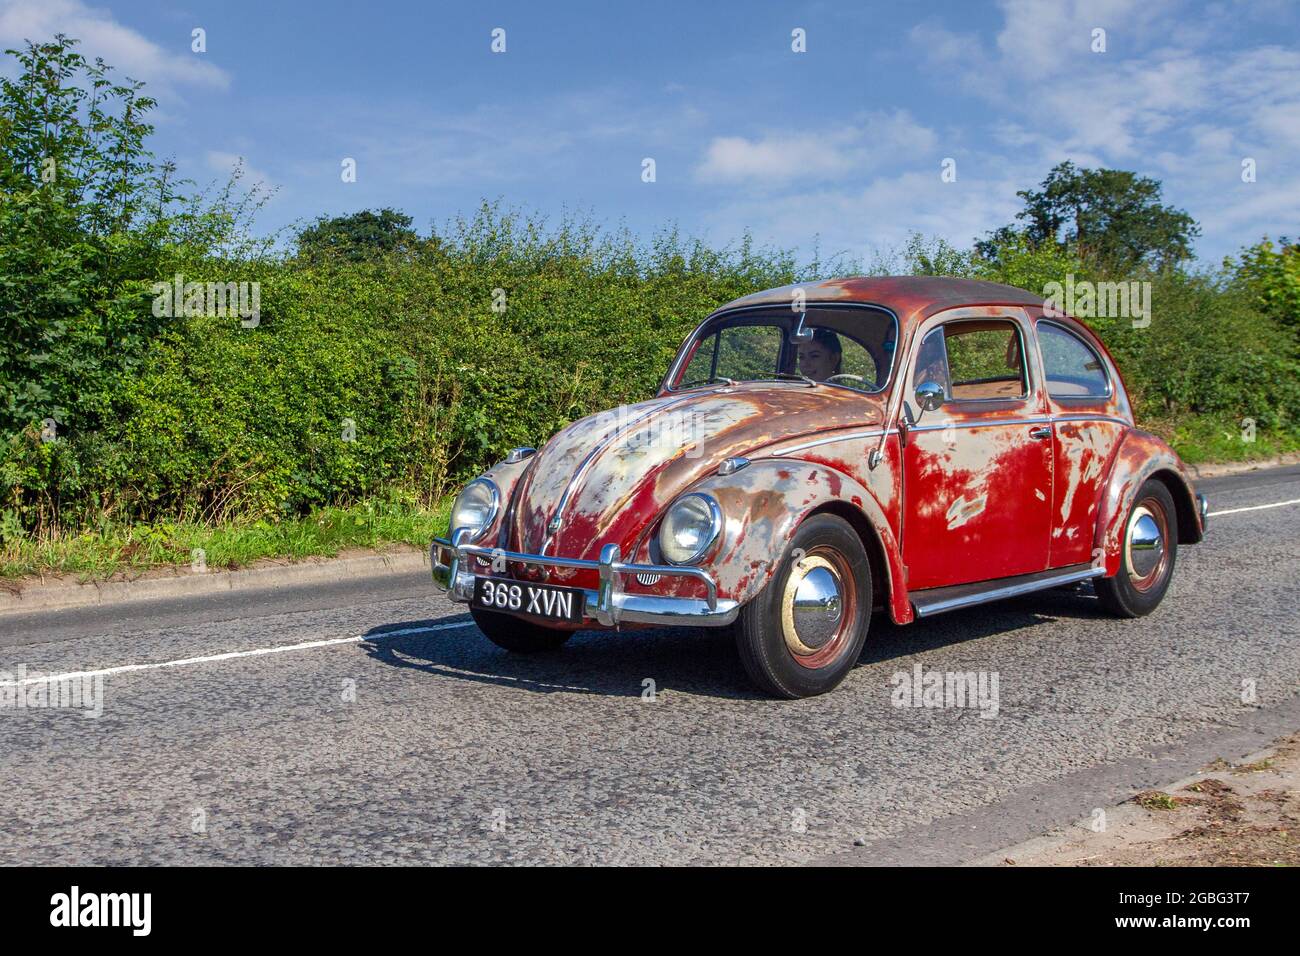 1959 50s Años De Edad Oxidada A La Izquierda Conducción Roja Tipo Antiguo Vw Volkswagen Beetle 2815